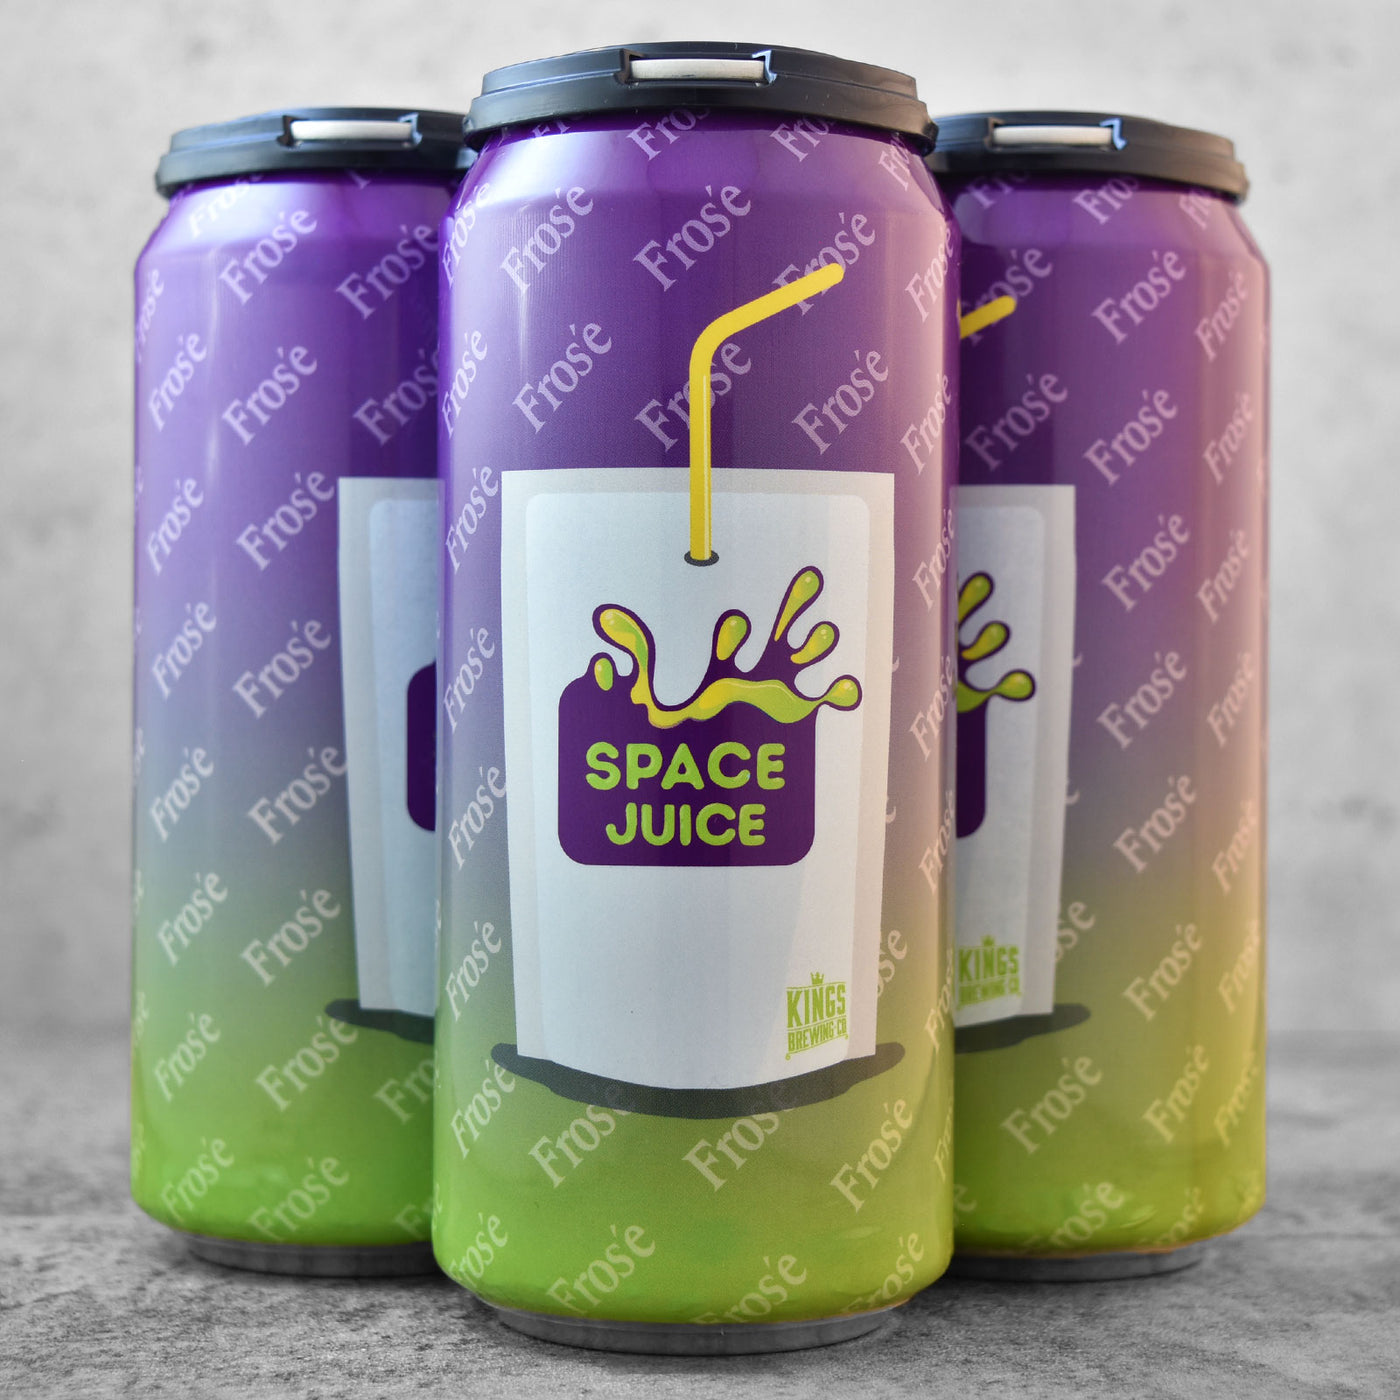 Kings Space Juice